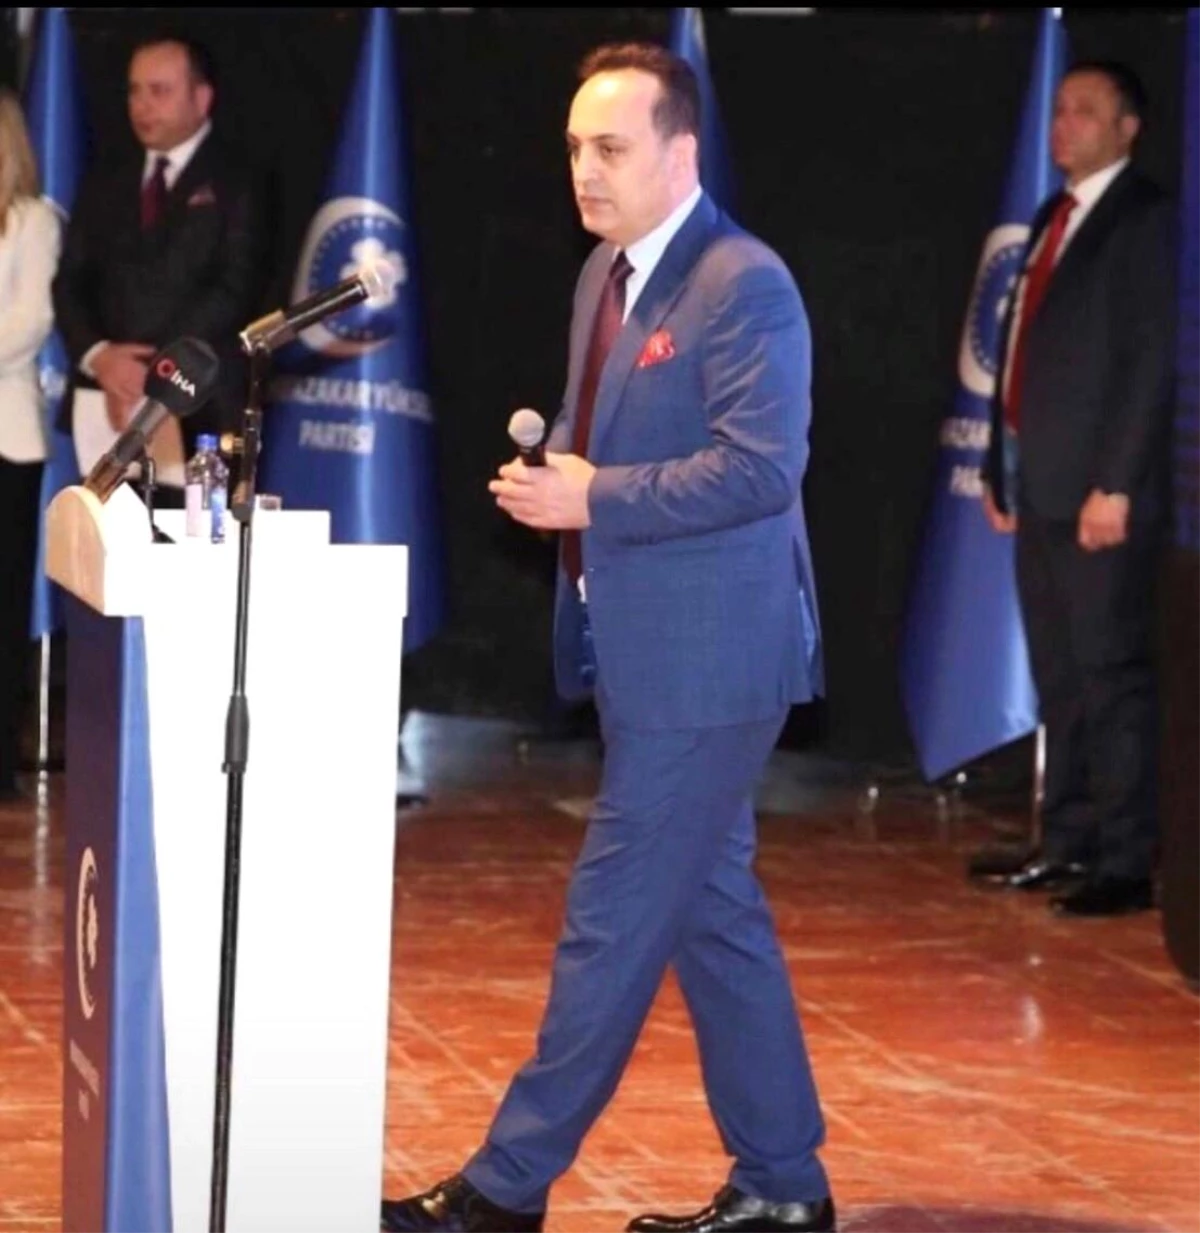 MYP Lideri Ahmet Reyiz Yılmaz: "Türkiye Başkanlık sistemine devam etmelidir "